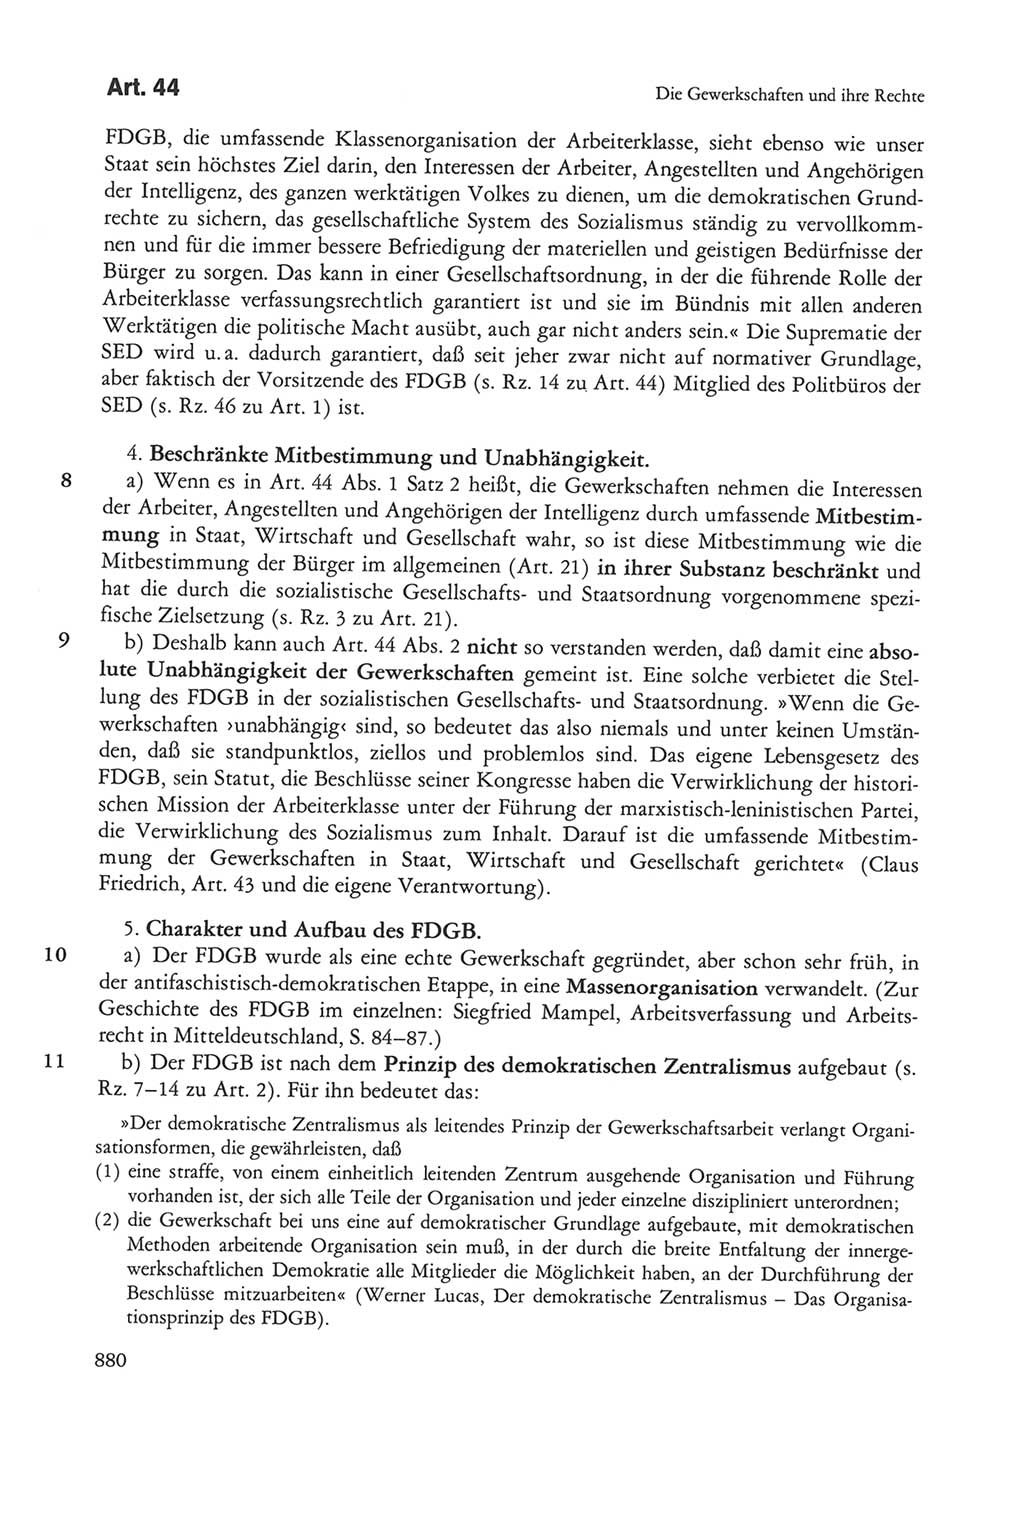 Die sozialistische Verfassung der Deutschen Demokratischen Republik (DDR), Kommentar 1982, Seite 880 (Soz. Verf. DDR Komm. 1982, S. 880)